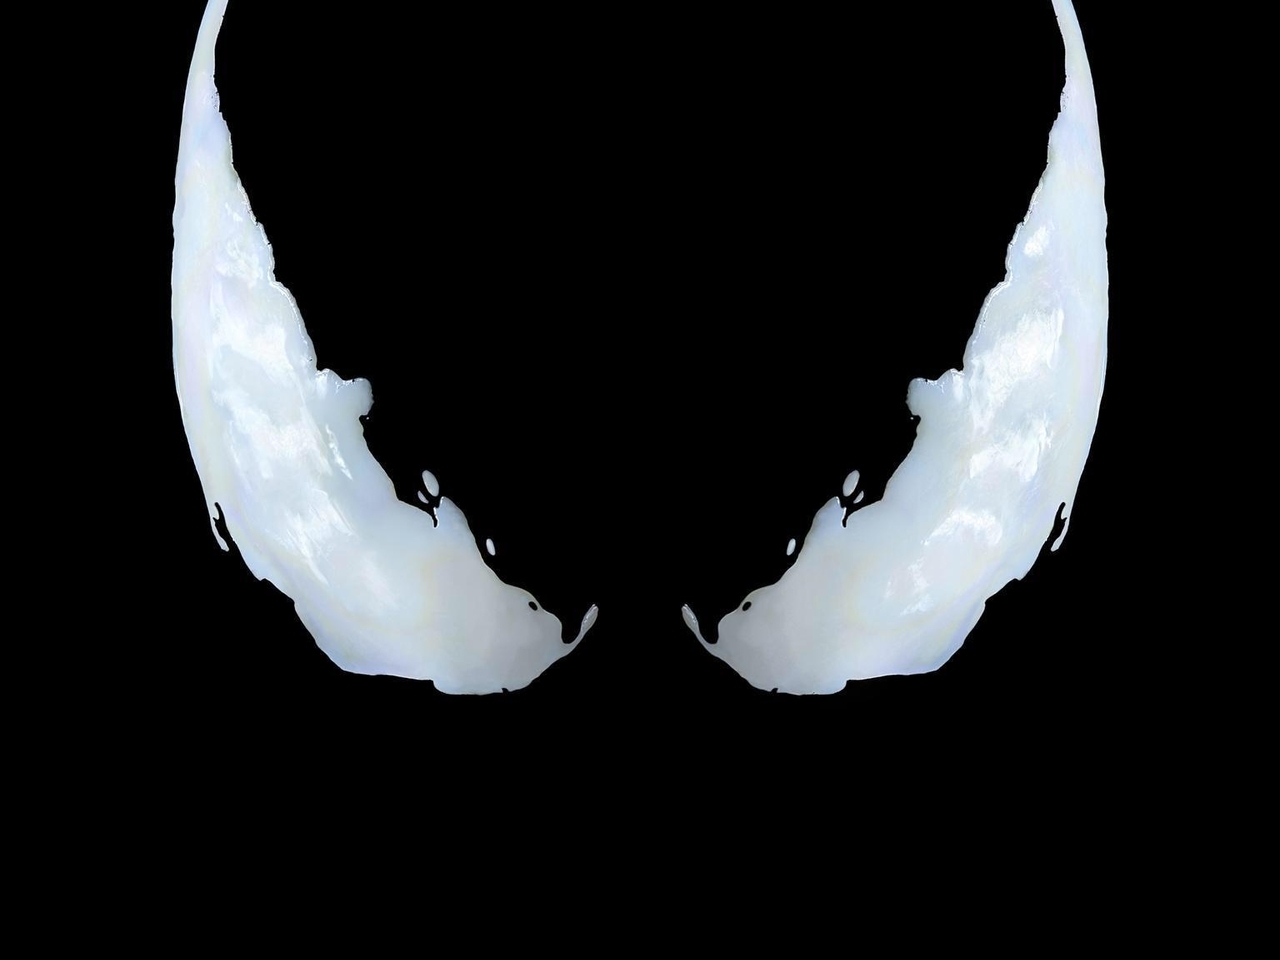 Image: Eyes, background, black, white, Venom, symbiote, Marvel, Sony